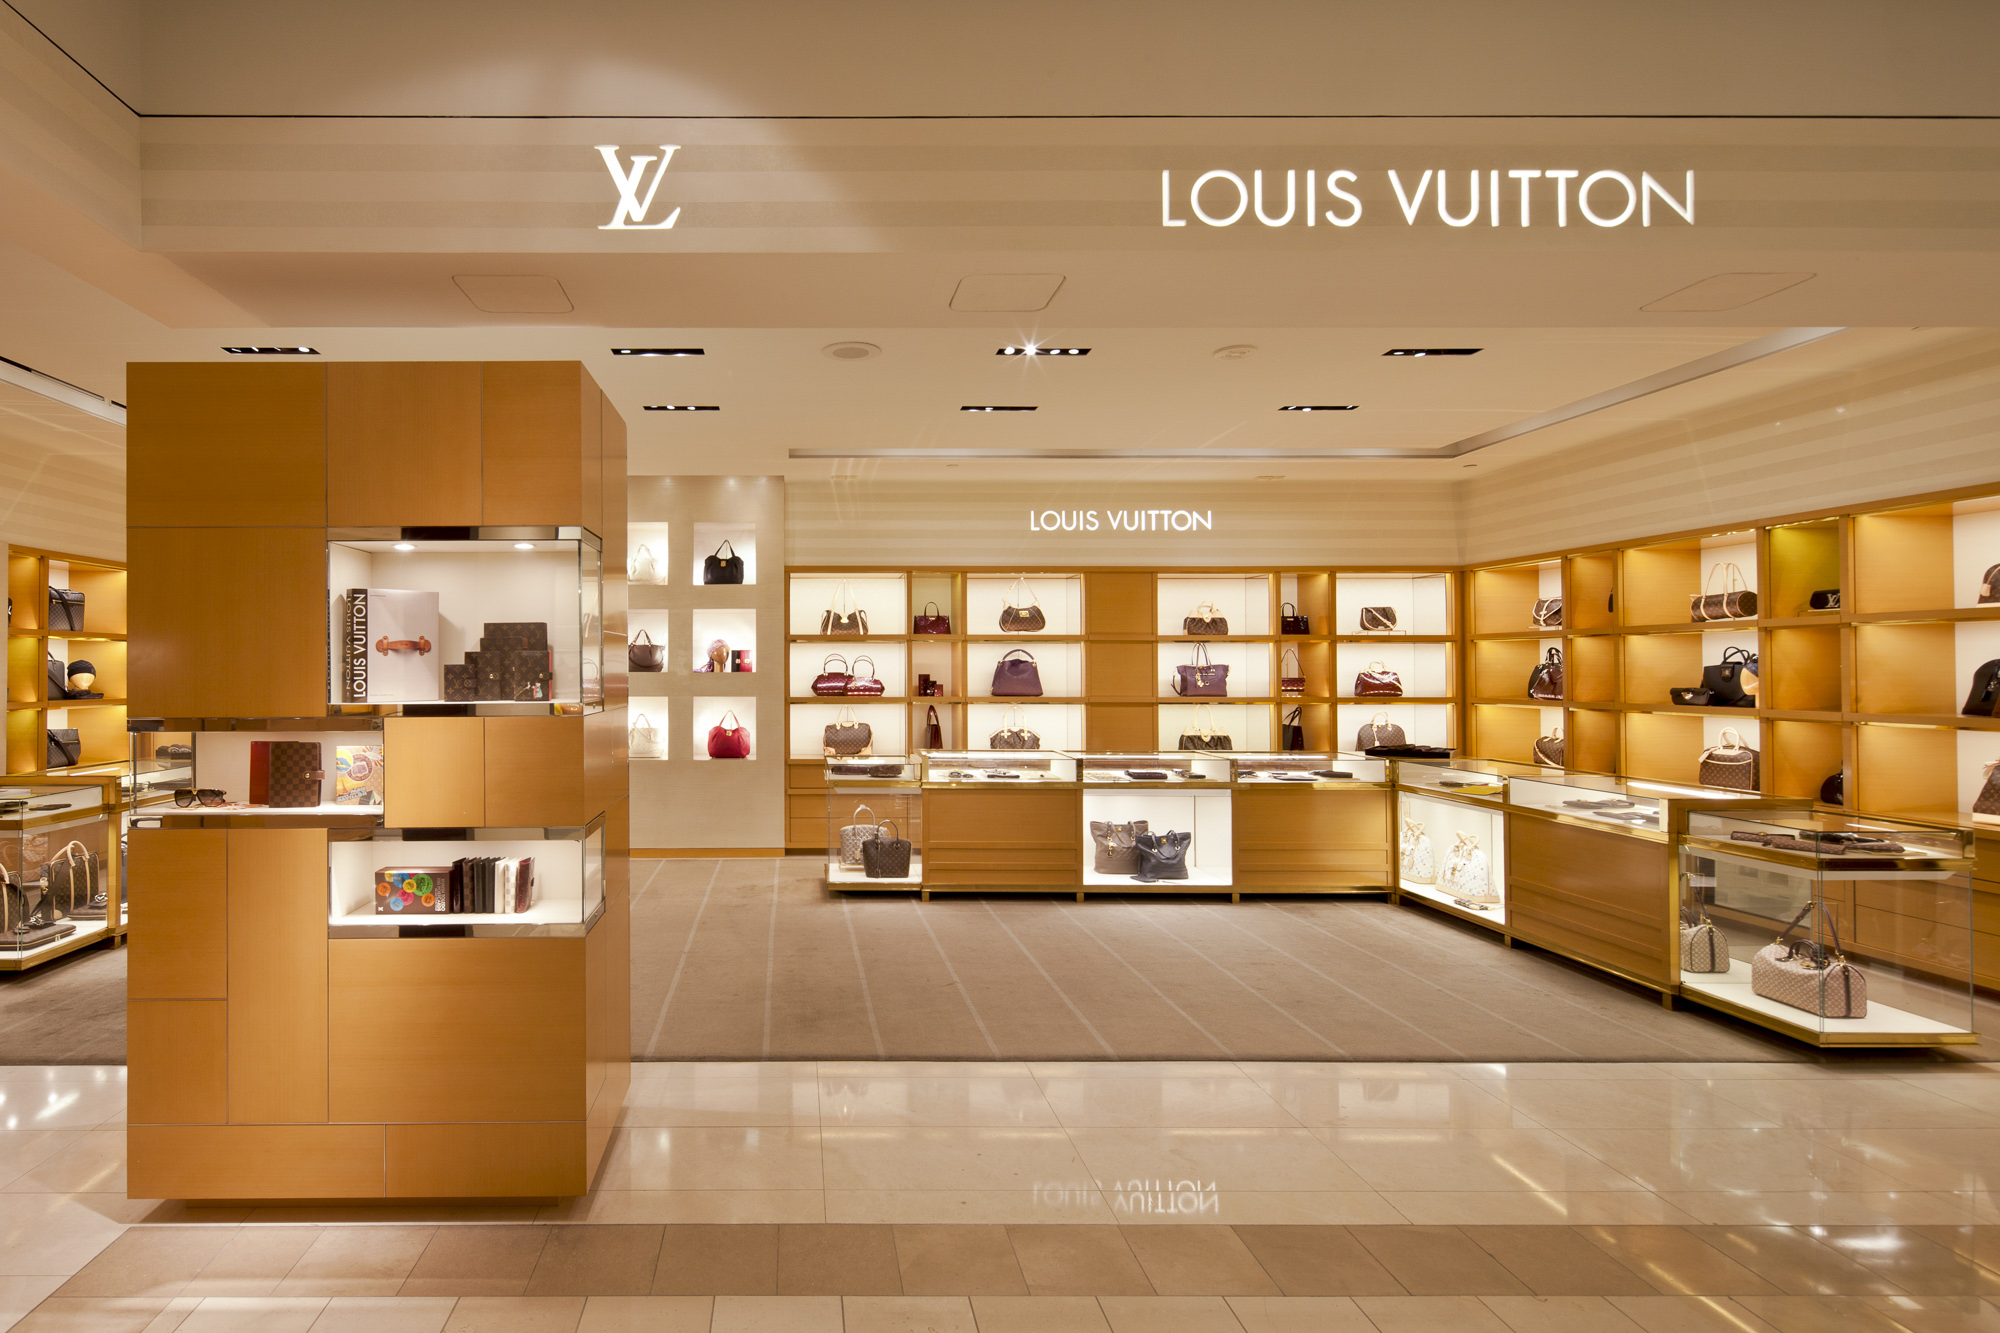 4 12 shop. Louis Vuitton интерьер. Интерьер Луи Виттон. Бутик интерьер Louis Vuitton. Шоурумы Луи Виттон.